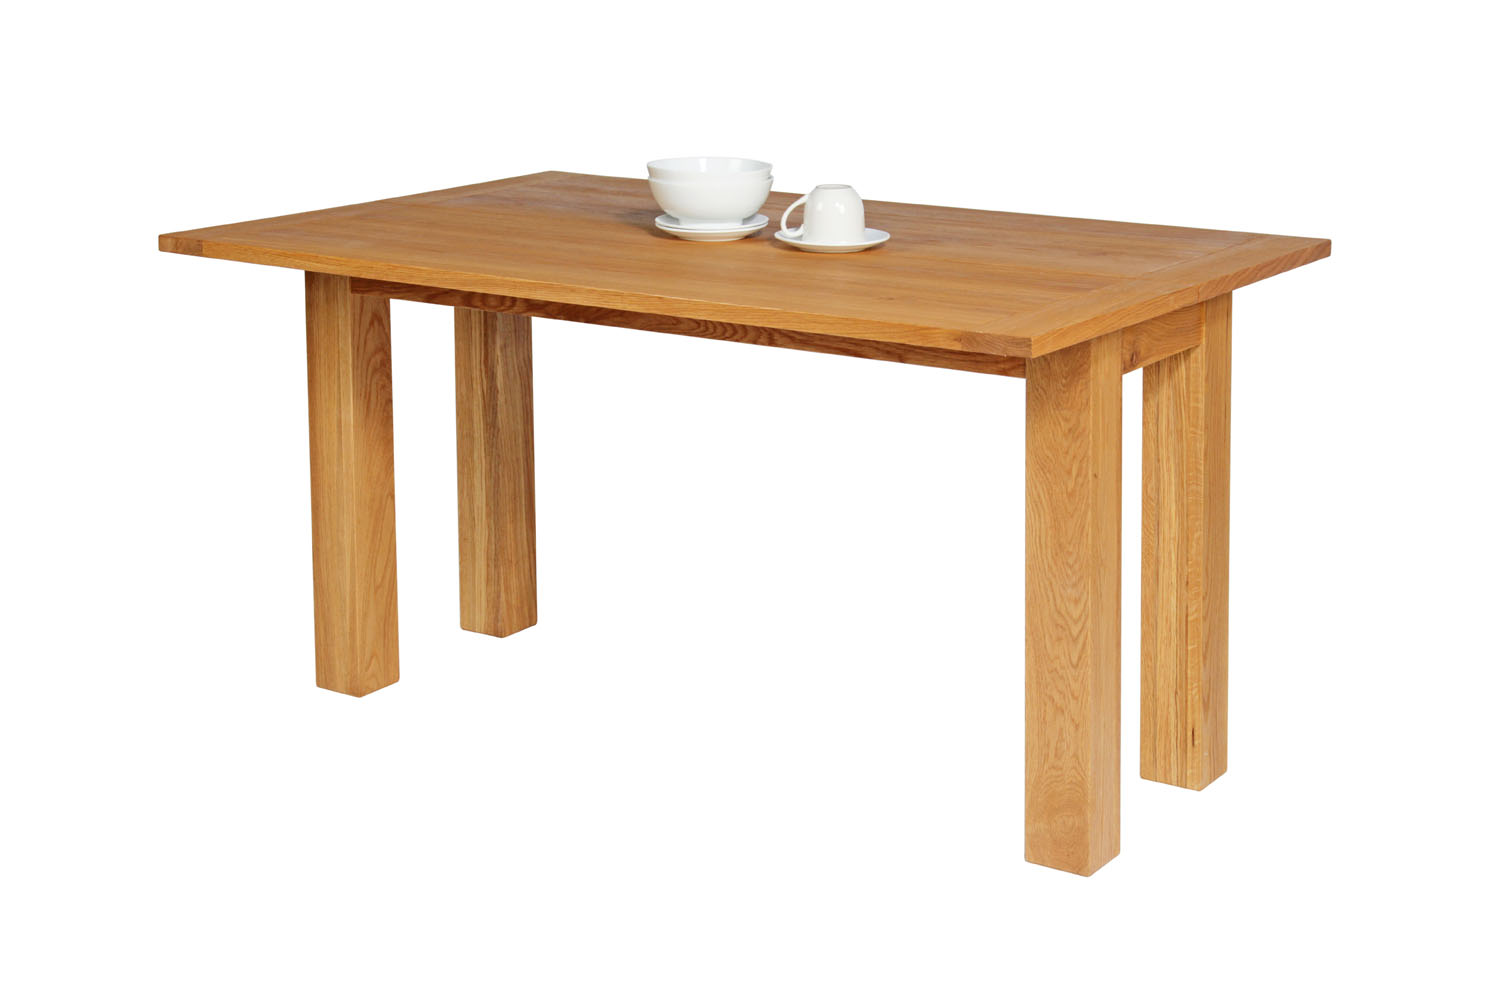 Lichfield Narrow Flip Top Oak Table From Top Furniture